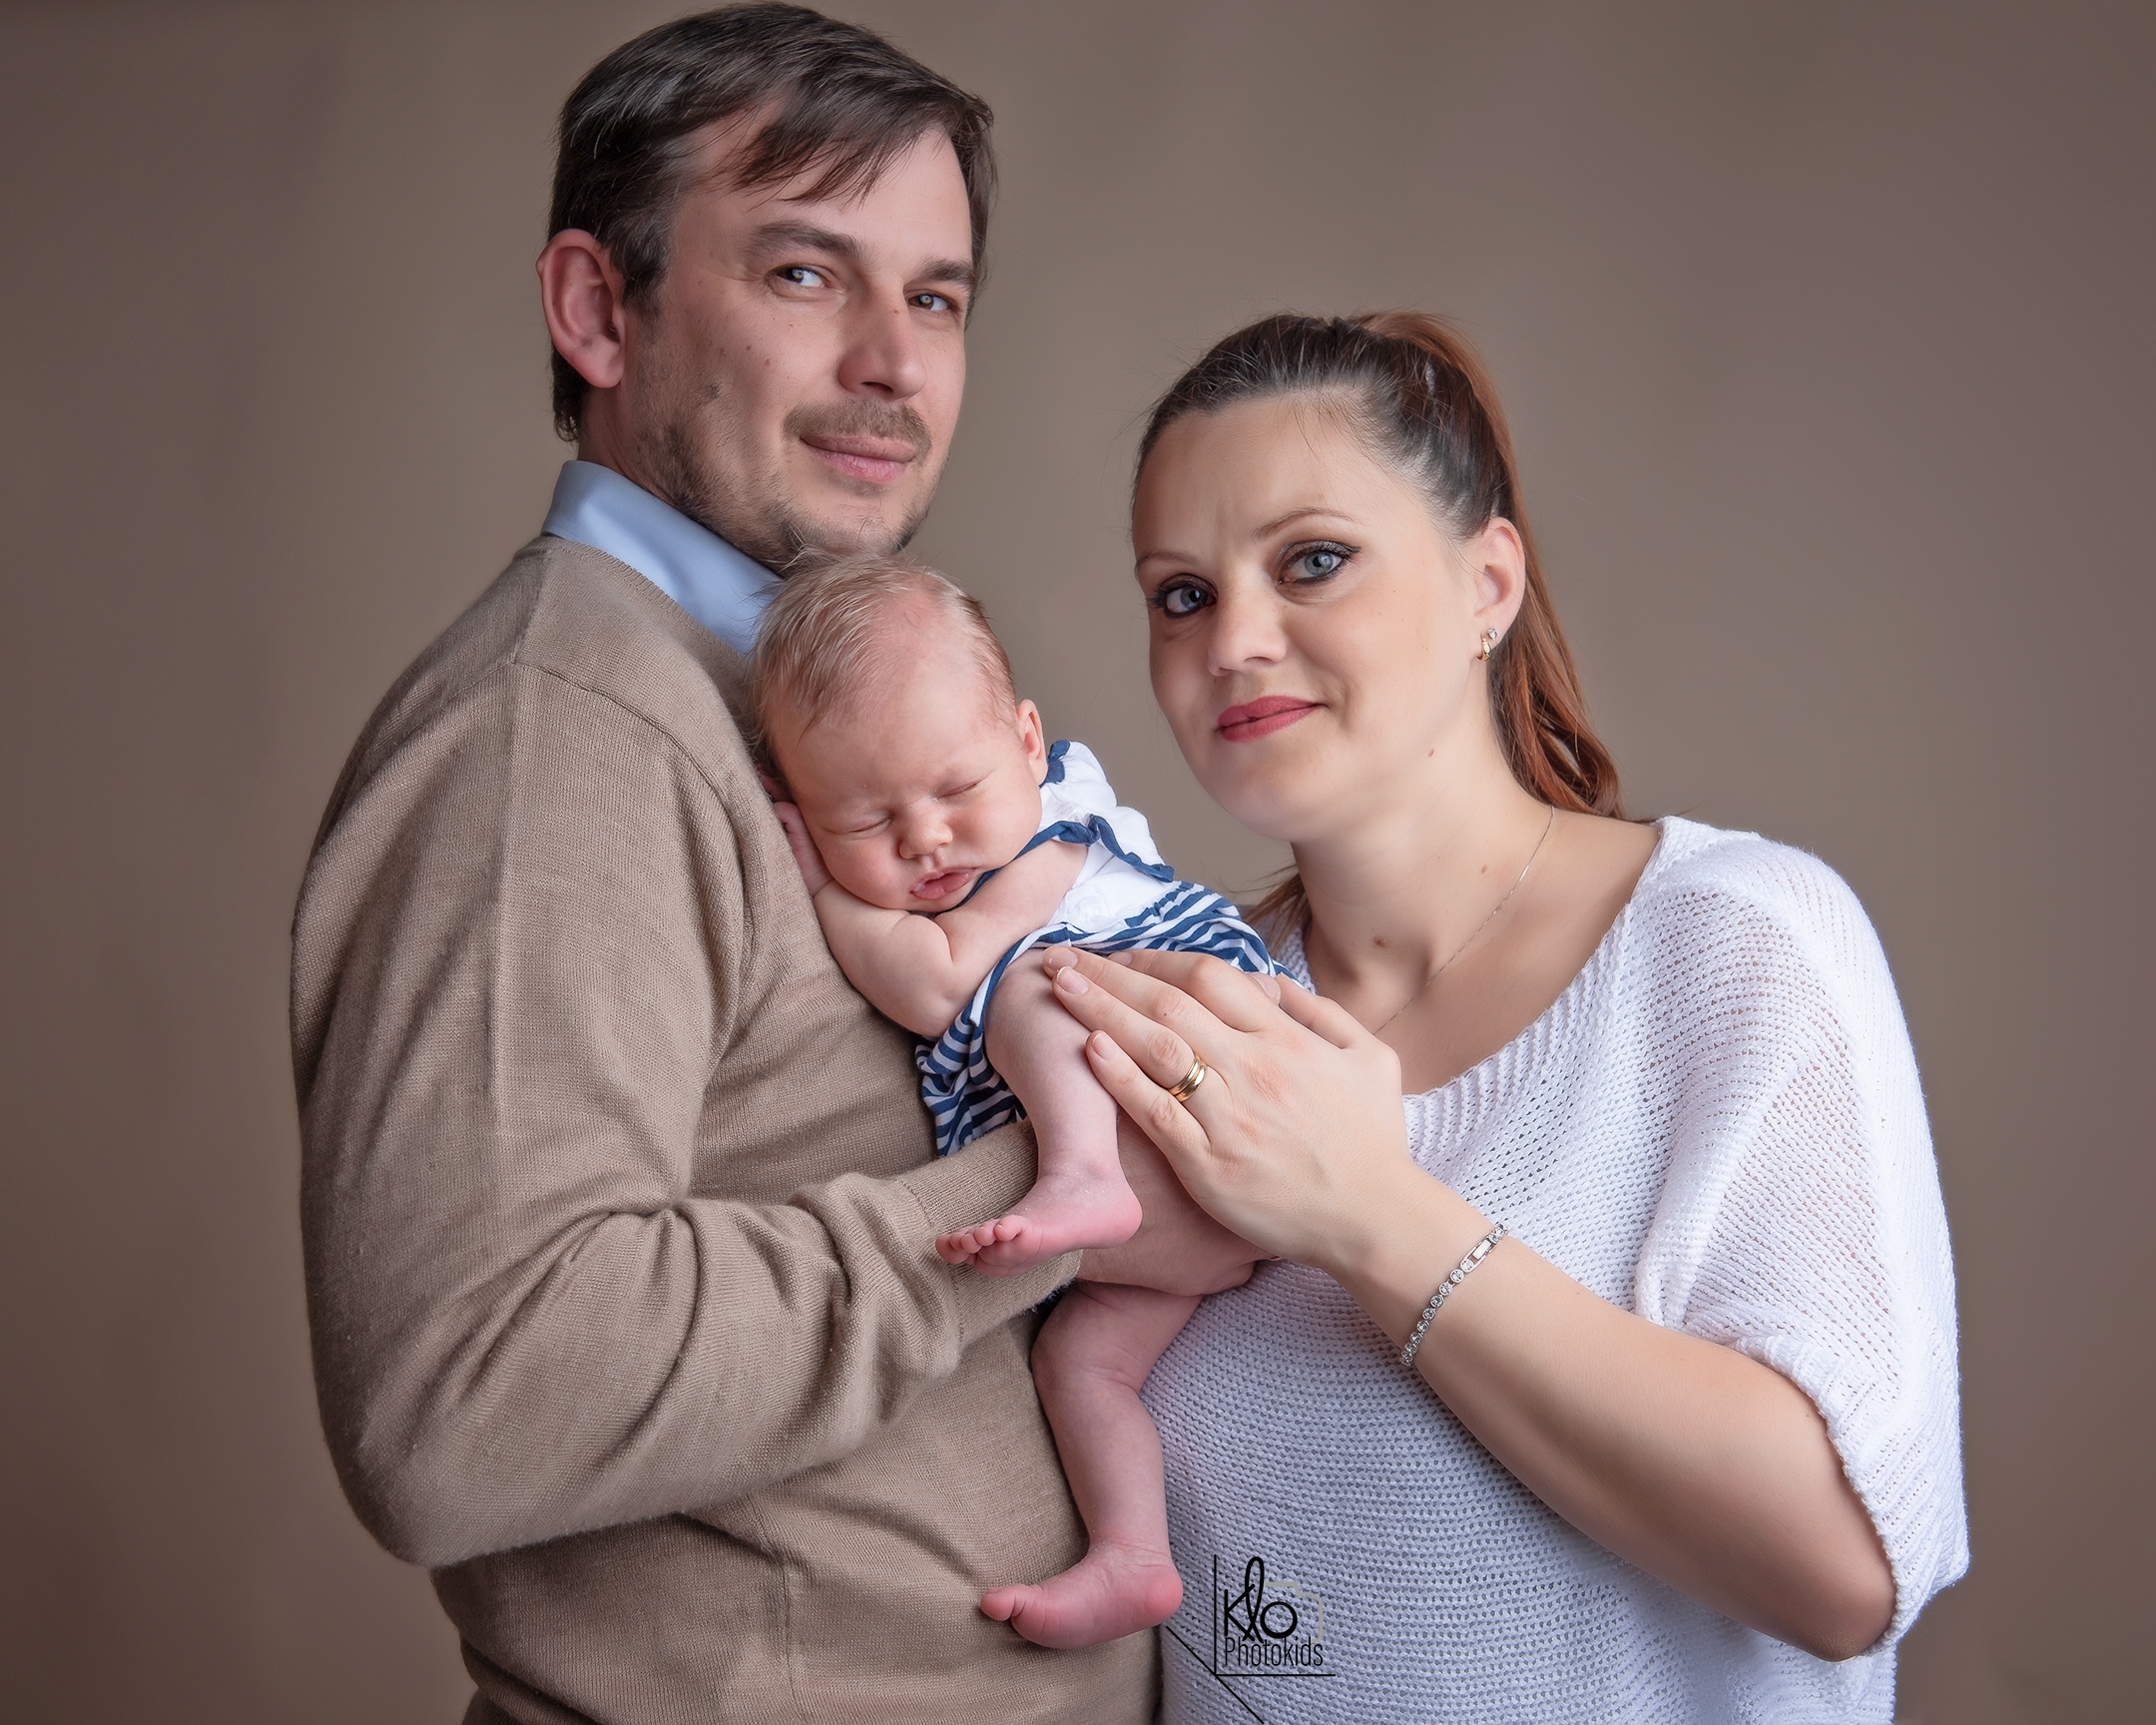  papà e mamma tengono in braccio la neonata per le prime foto durante la sessione fotografica di famiglia presso fotografa klophotokids